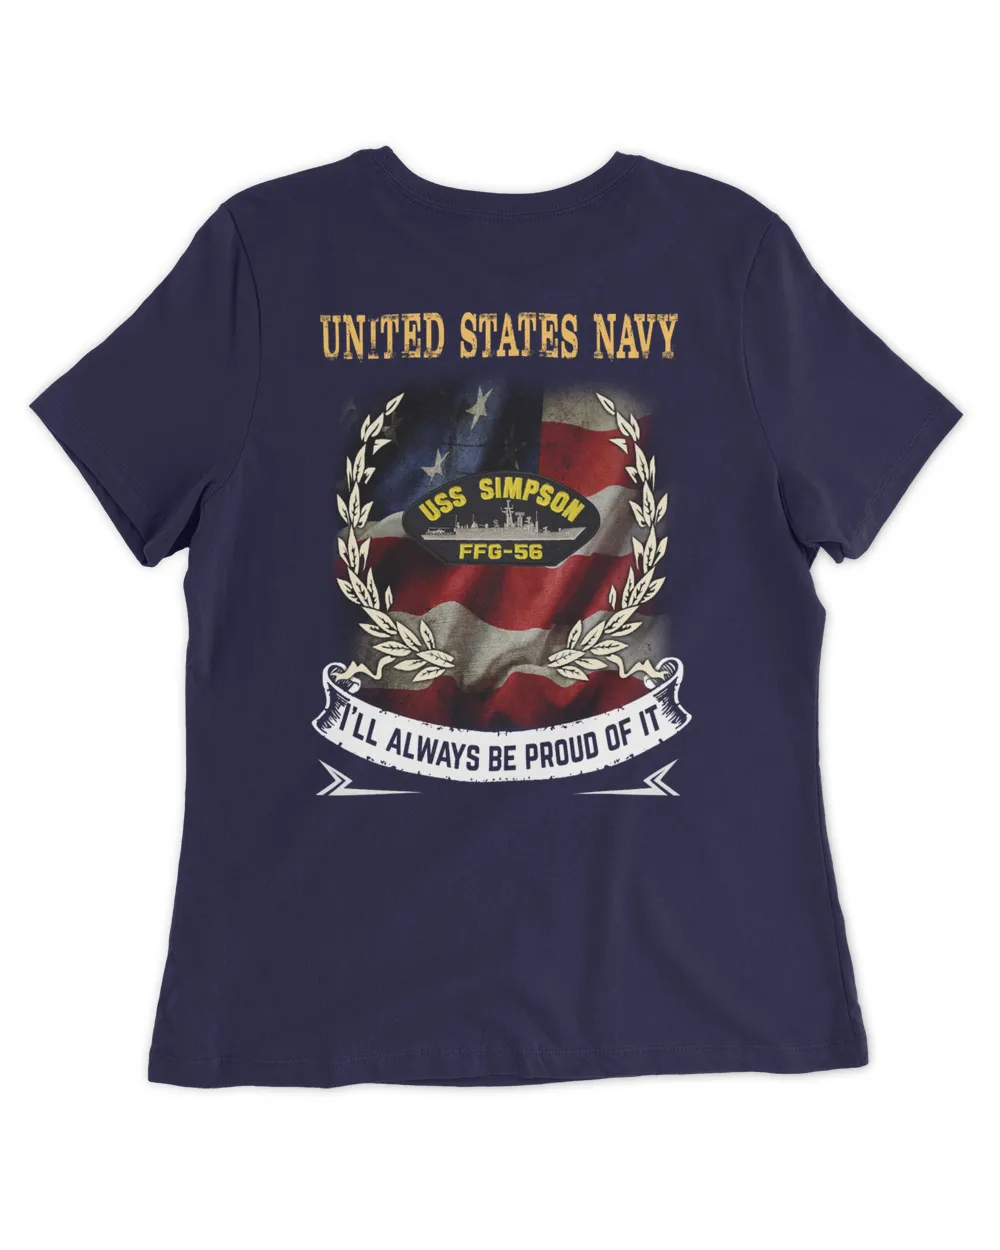 USS Simpson (FFG-56) Tshirt